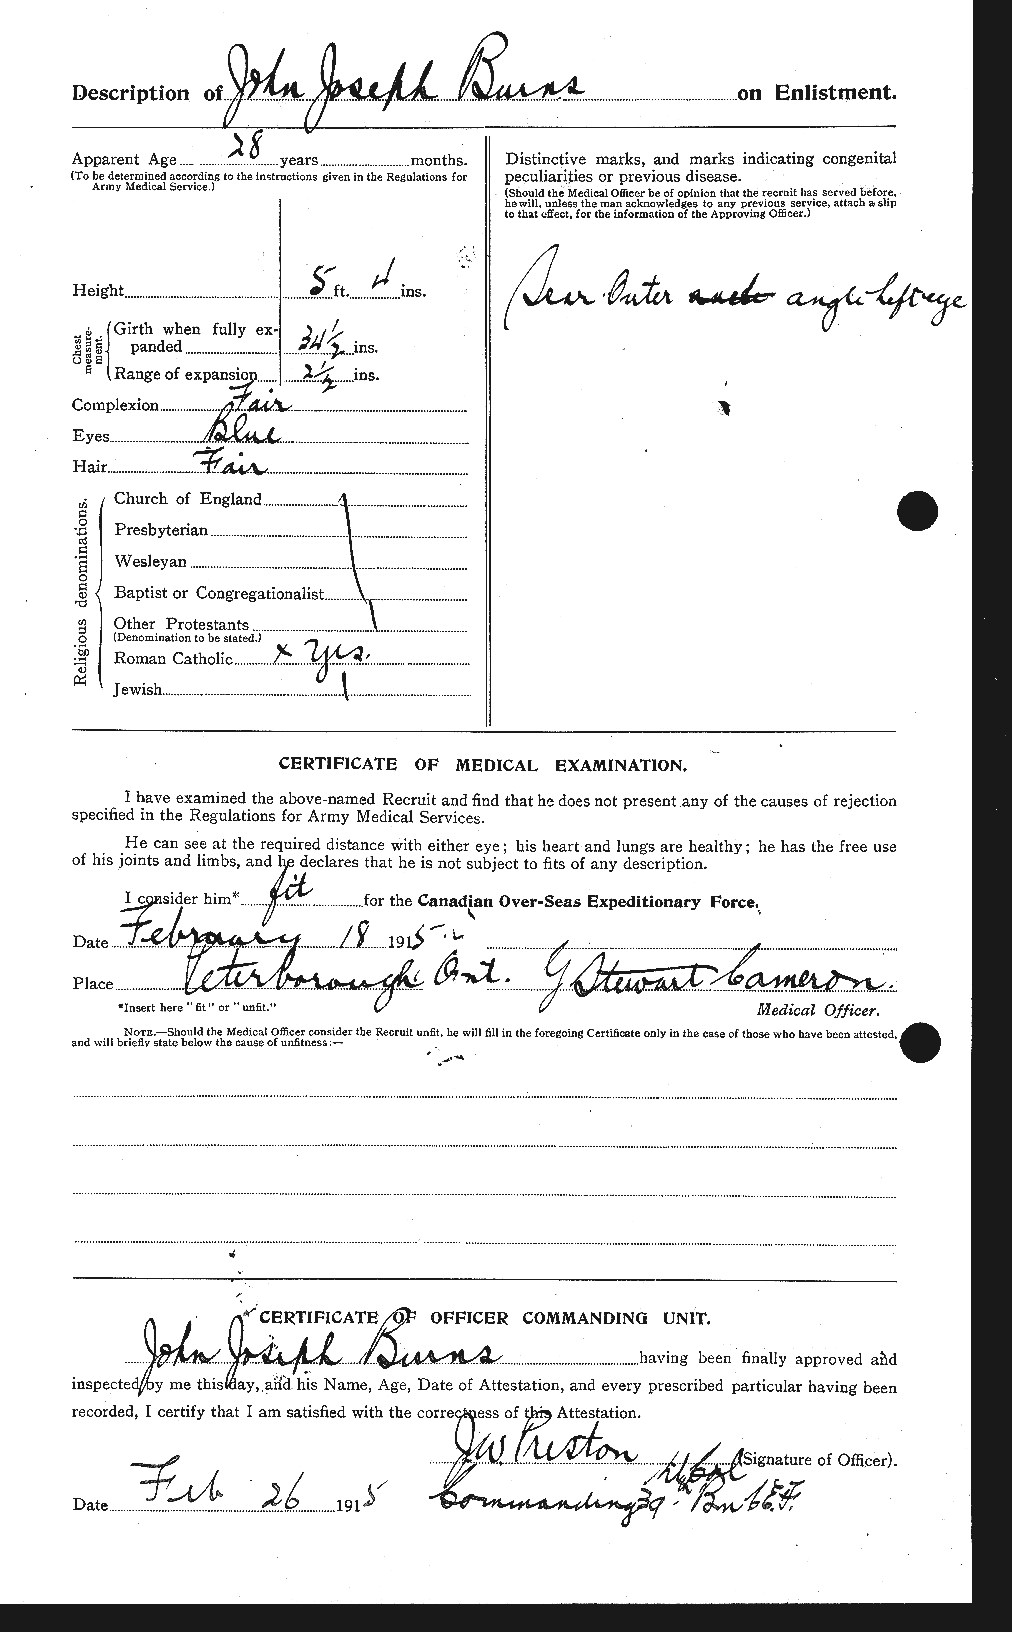 Dossiers du Personnel de la Première Guerre mondiale - CEC 275497b